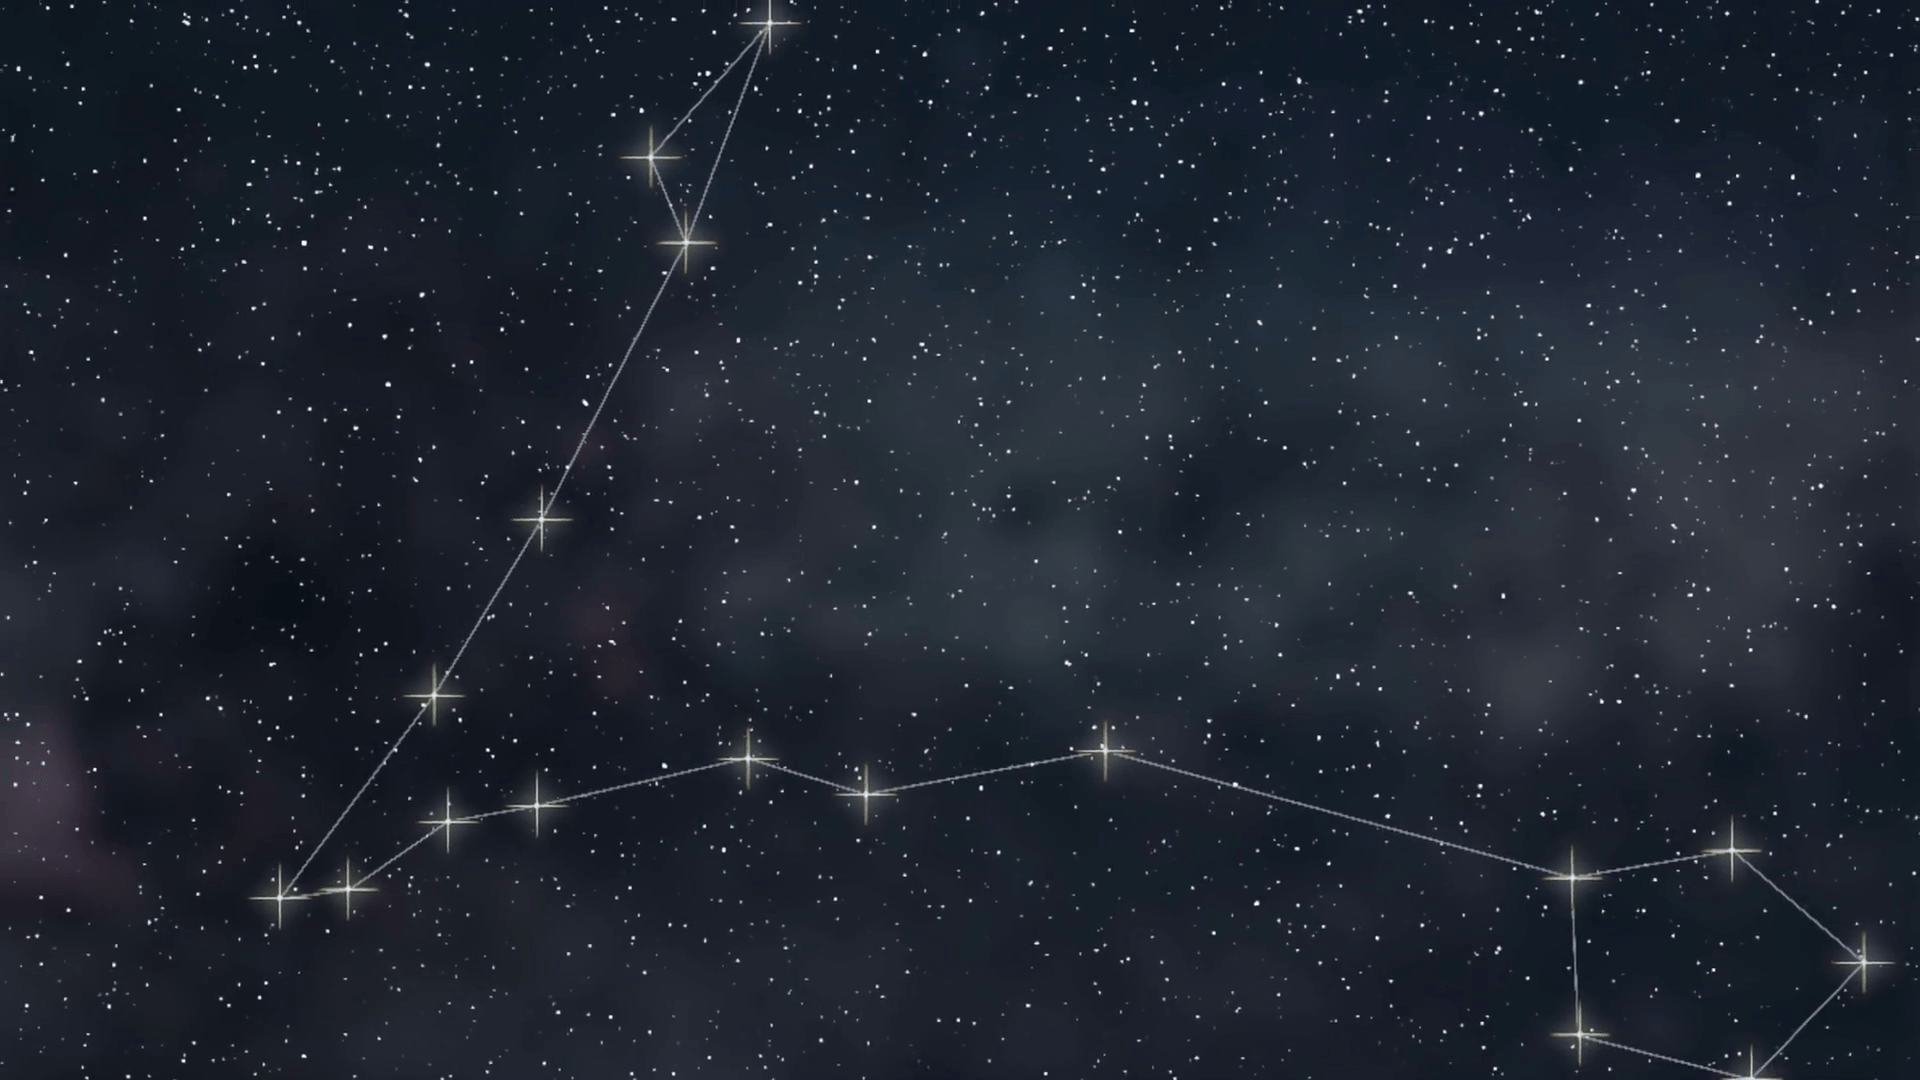 The constellation of scorpius - Constellation